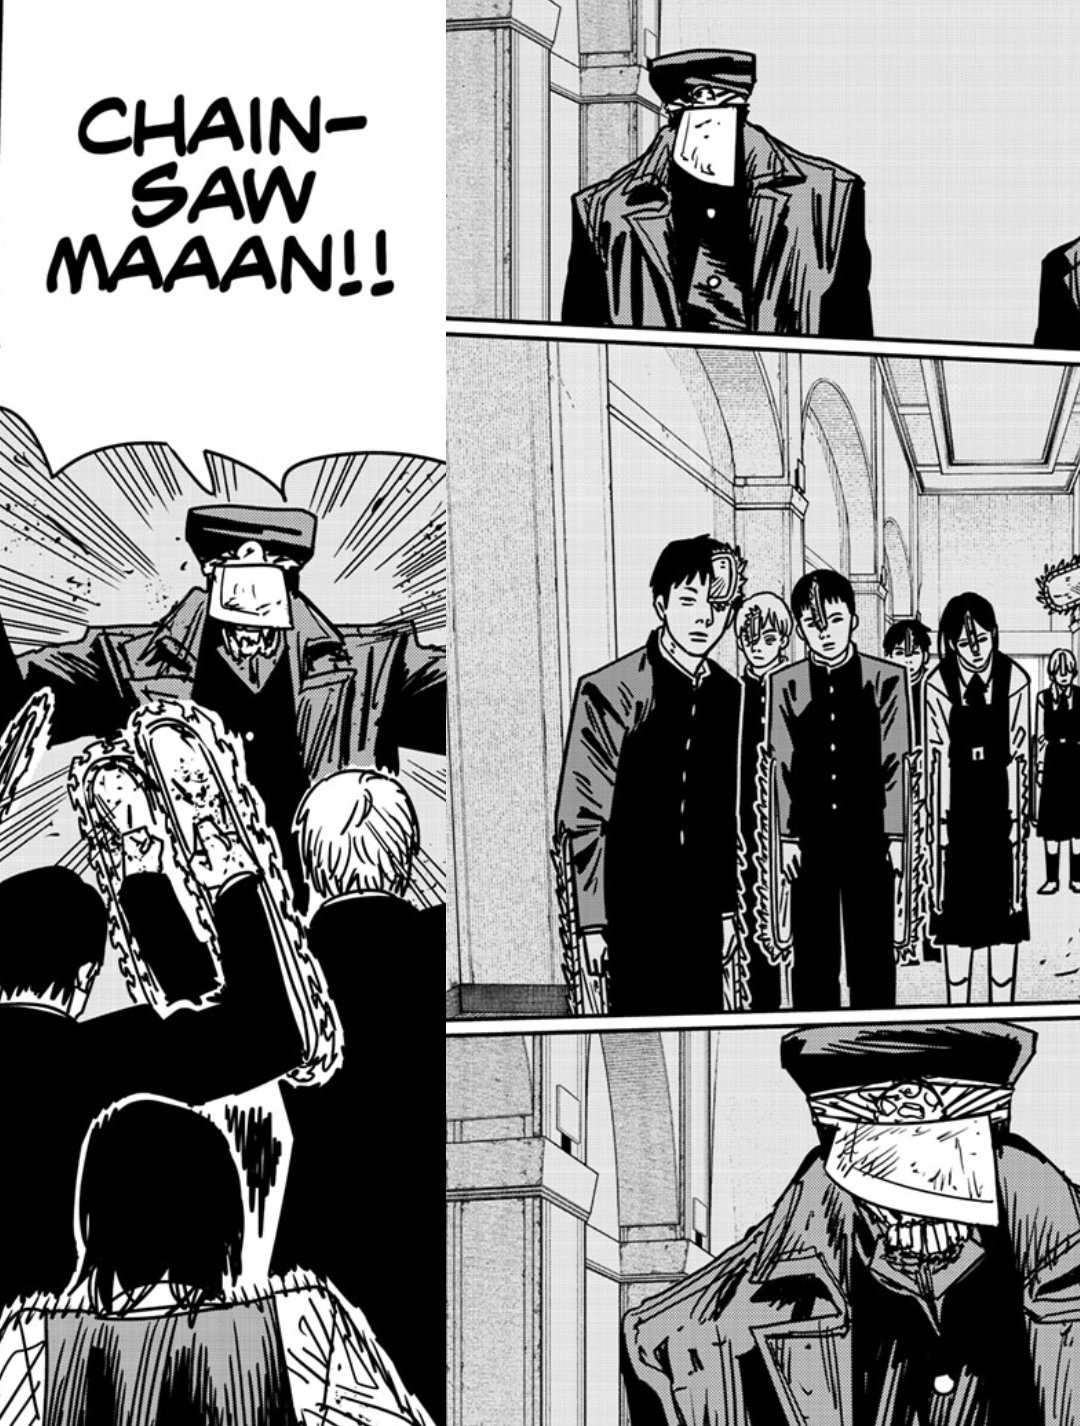 Chainsaw Man Chapter 147 - Manga